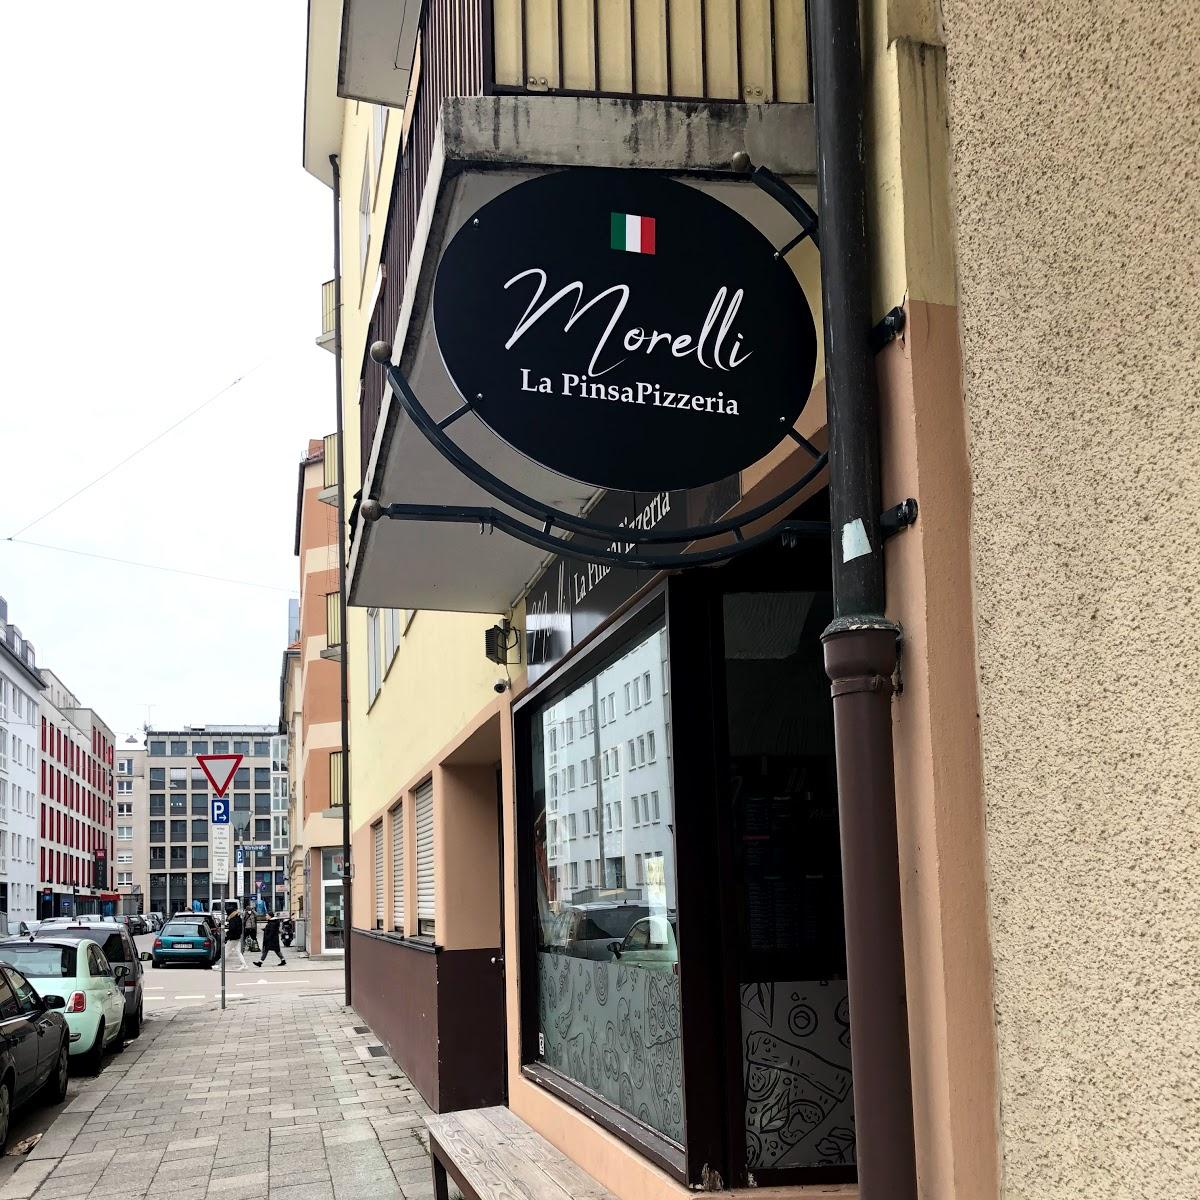 Restaurant "Morelli La PinsaPizzeria" in München